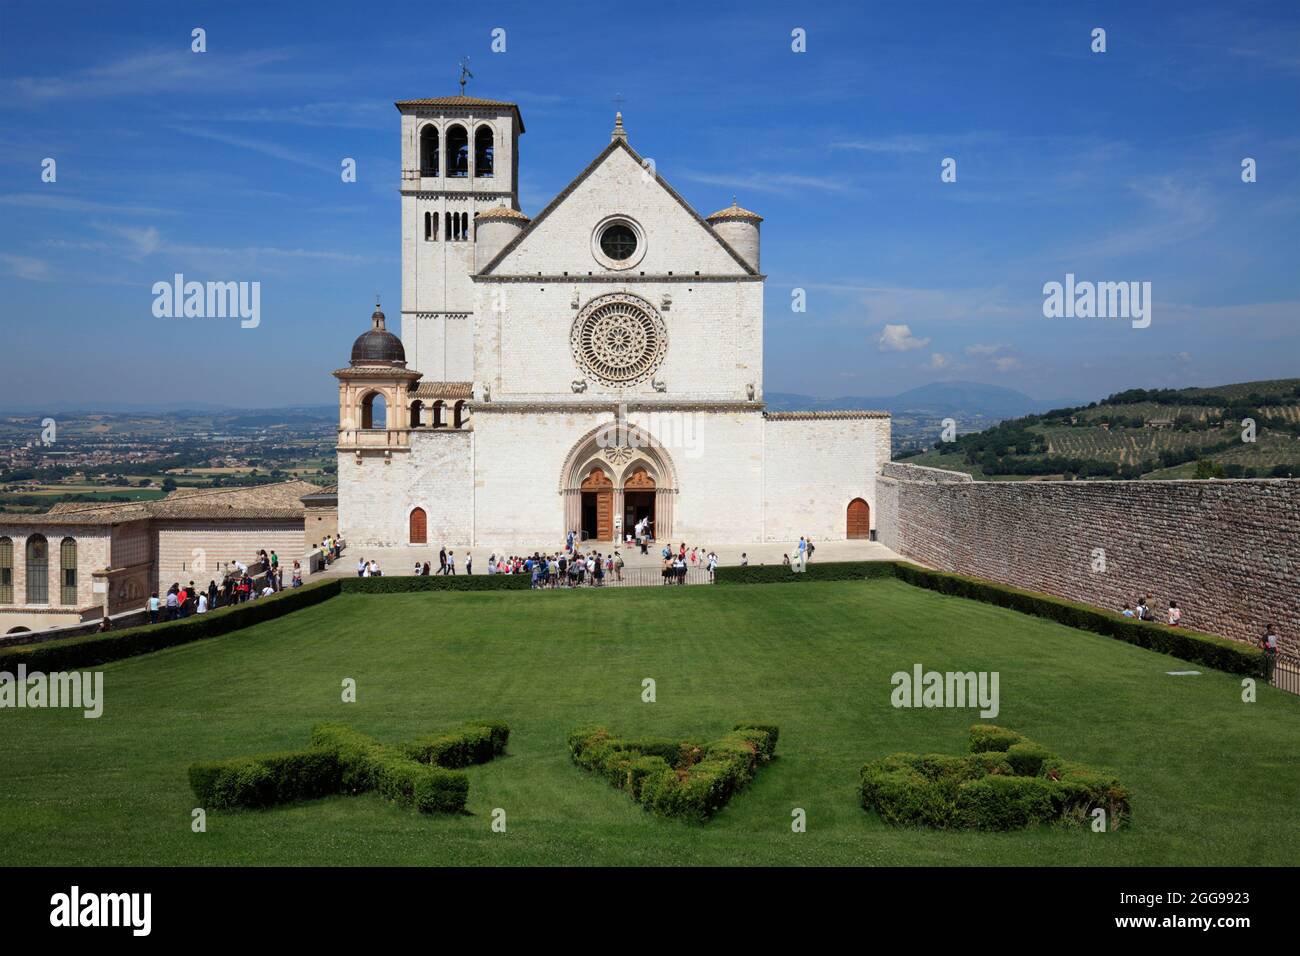 Basilica of San Francesco d'Assisi, Assisi, Italy Stock Photo